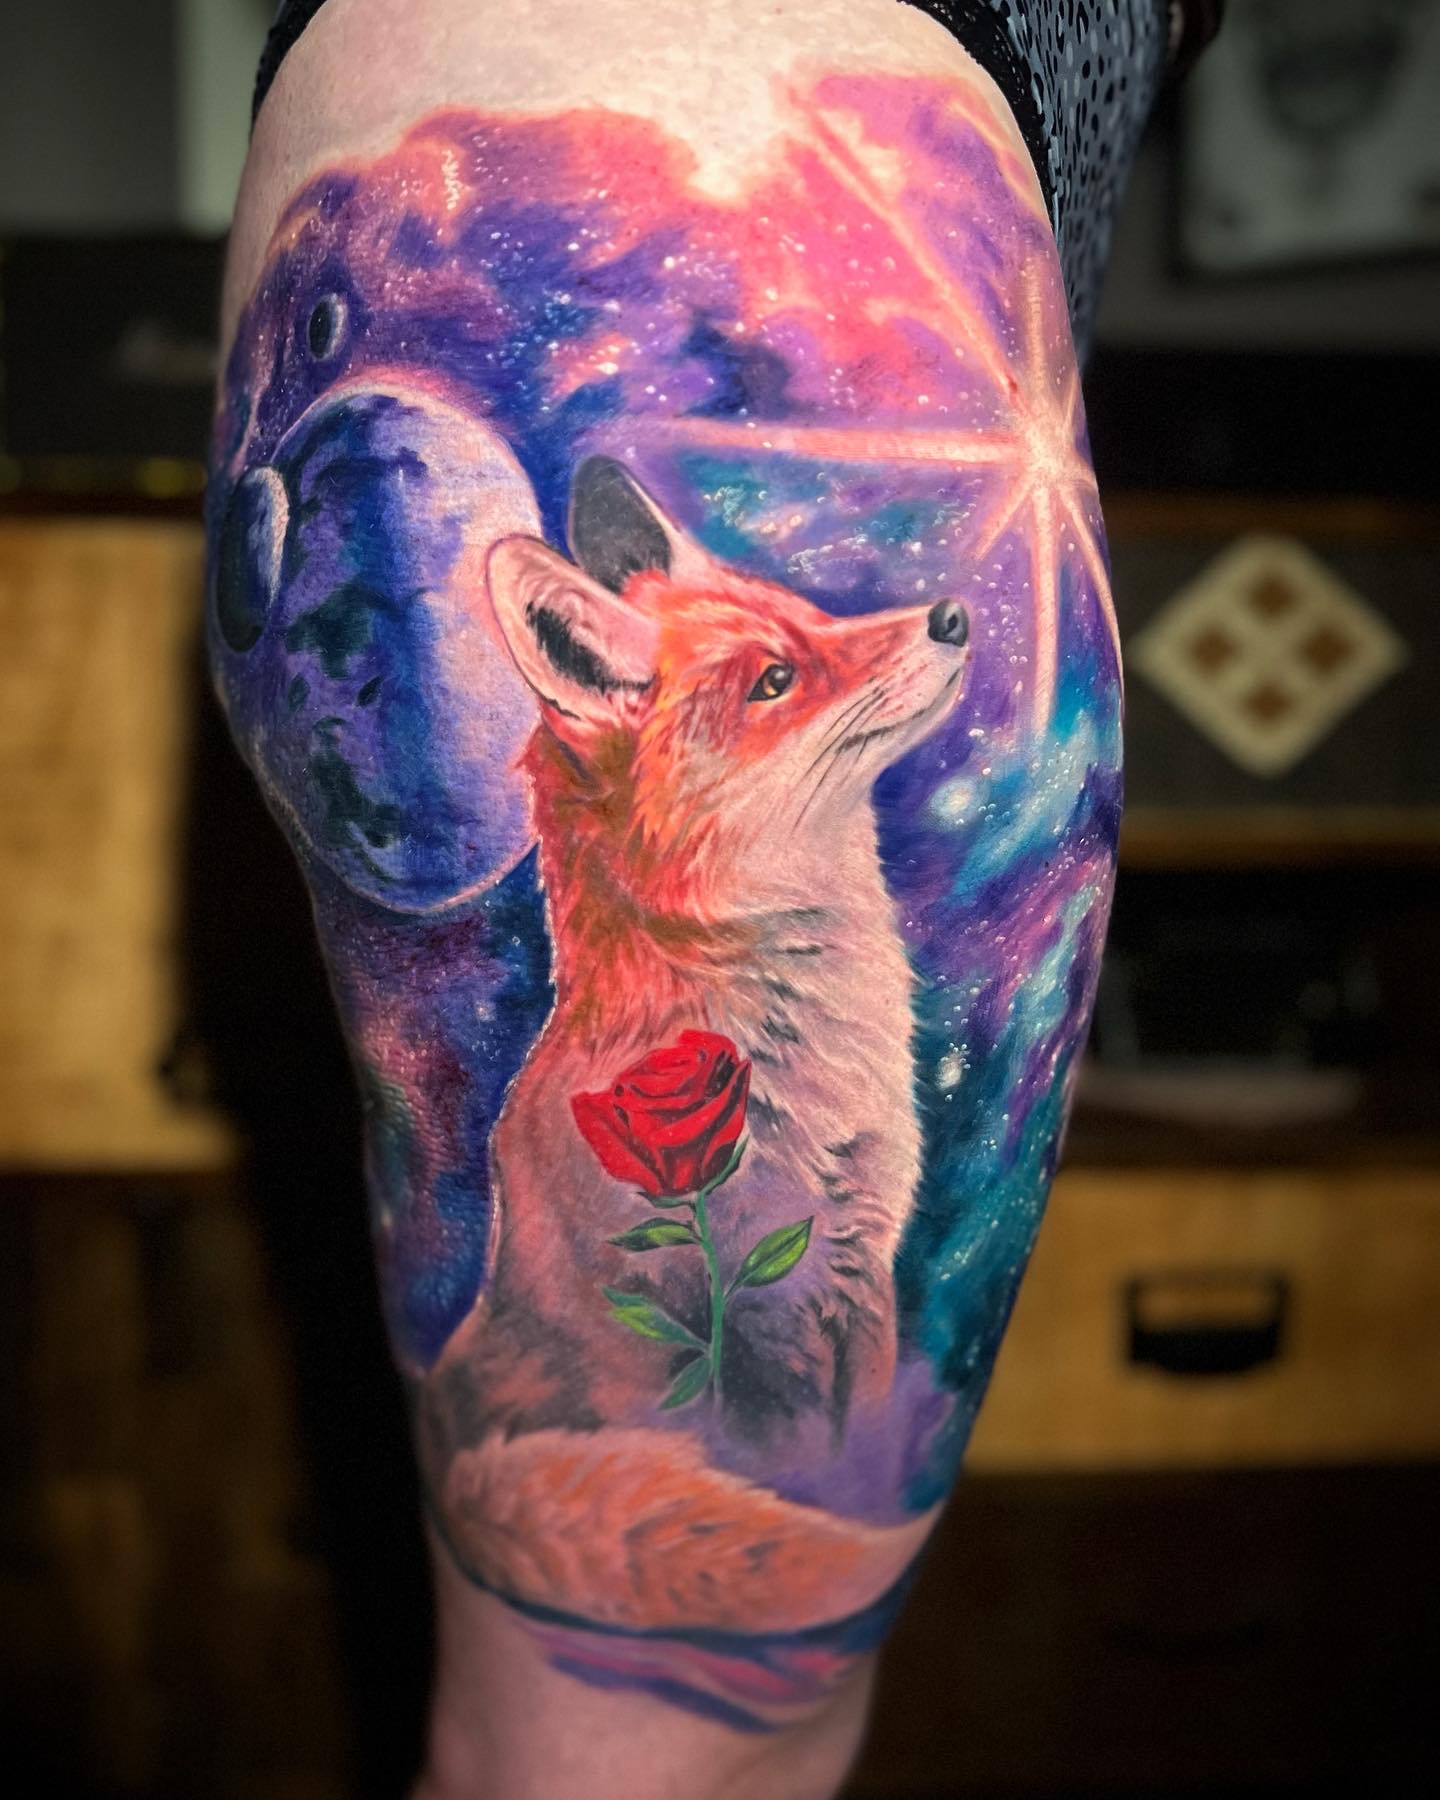 Tatouage réaliste couleurs d'un renard et d'une rose.